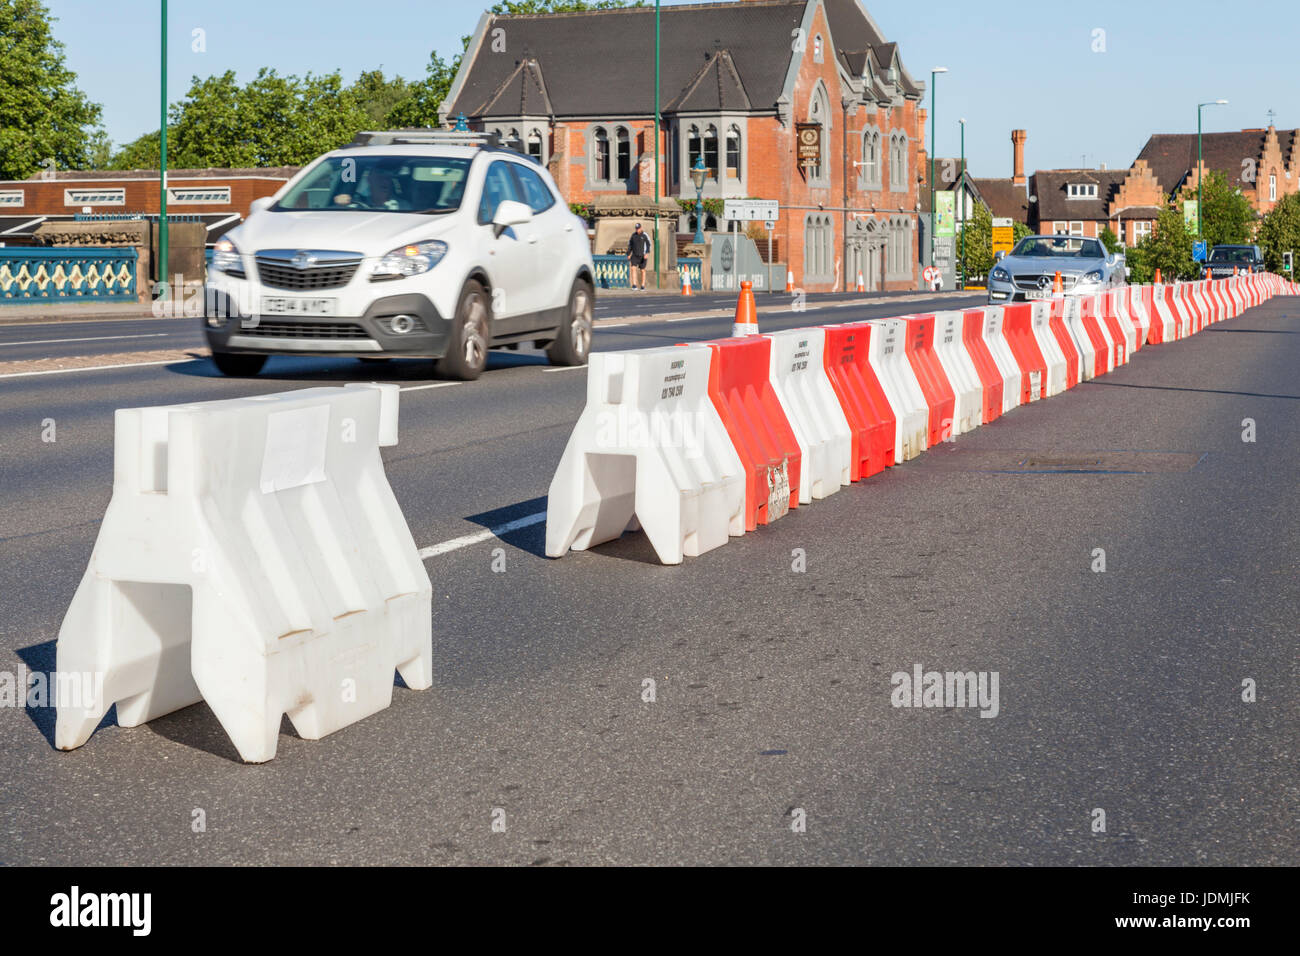 Fermeture de voie routière temporaire en rouge et blanc de la circulation d'articles barrière formant une longue barrière, Nottingham, England, UK Banque D'Images